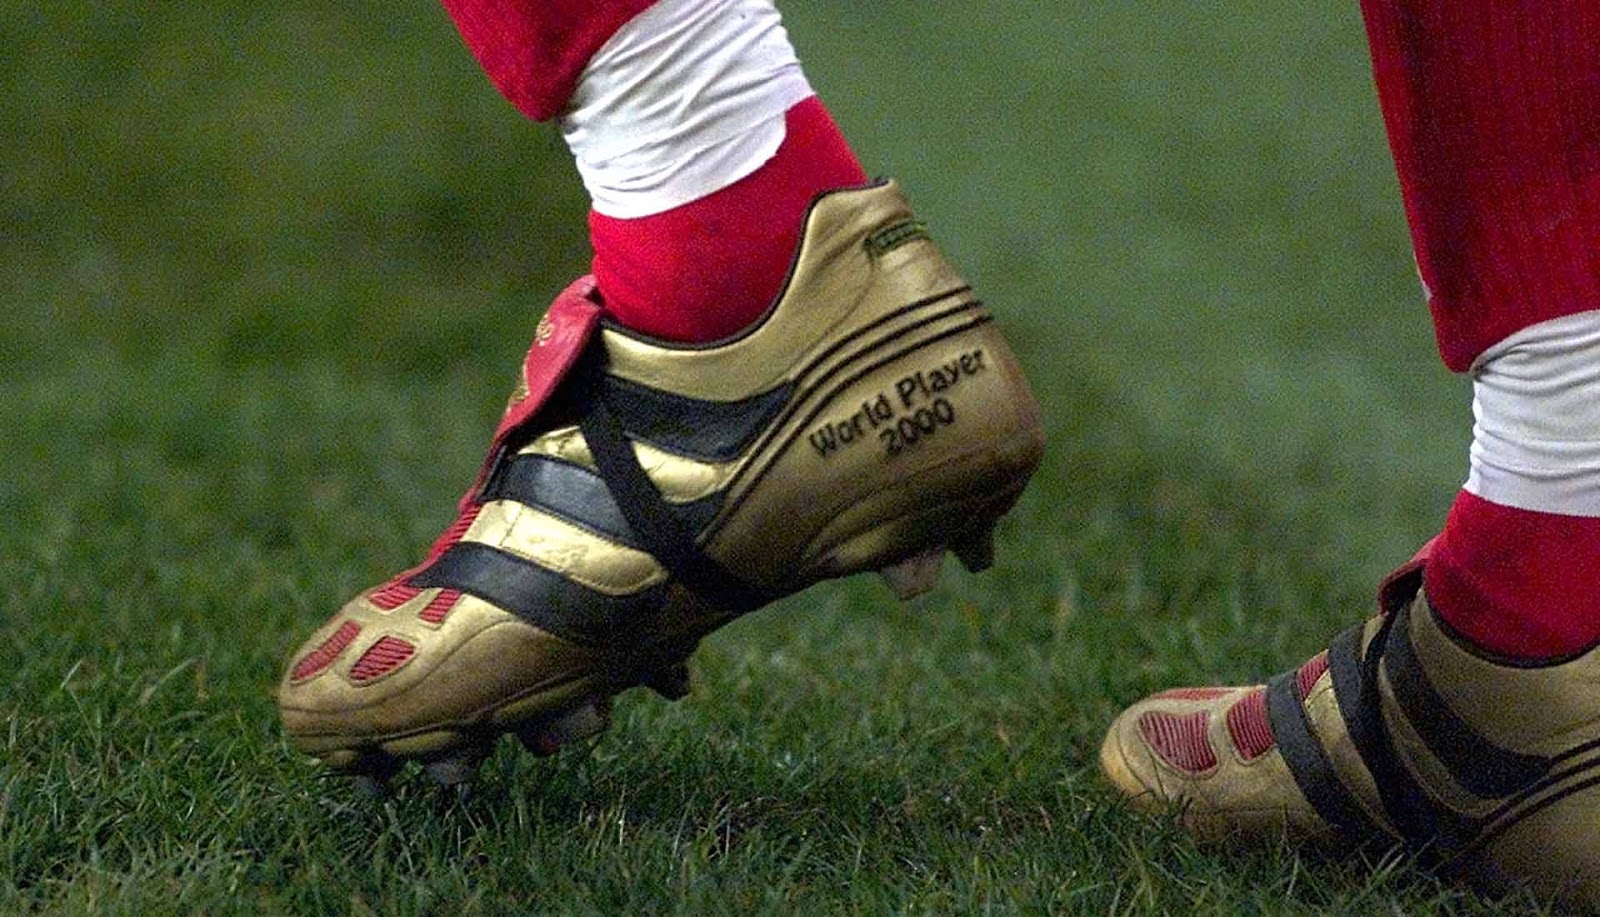 zidane boots world cup 2006